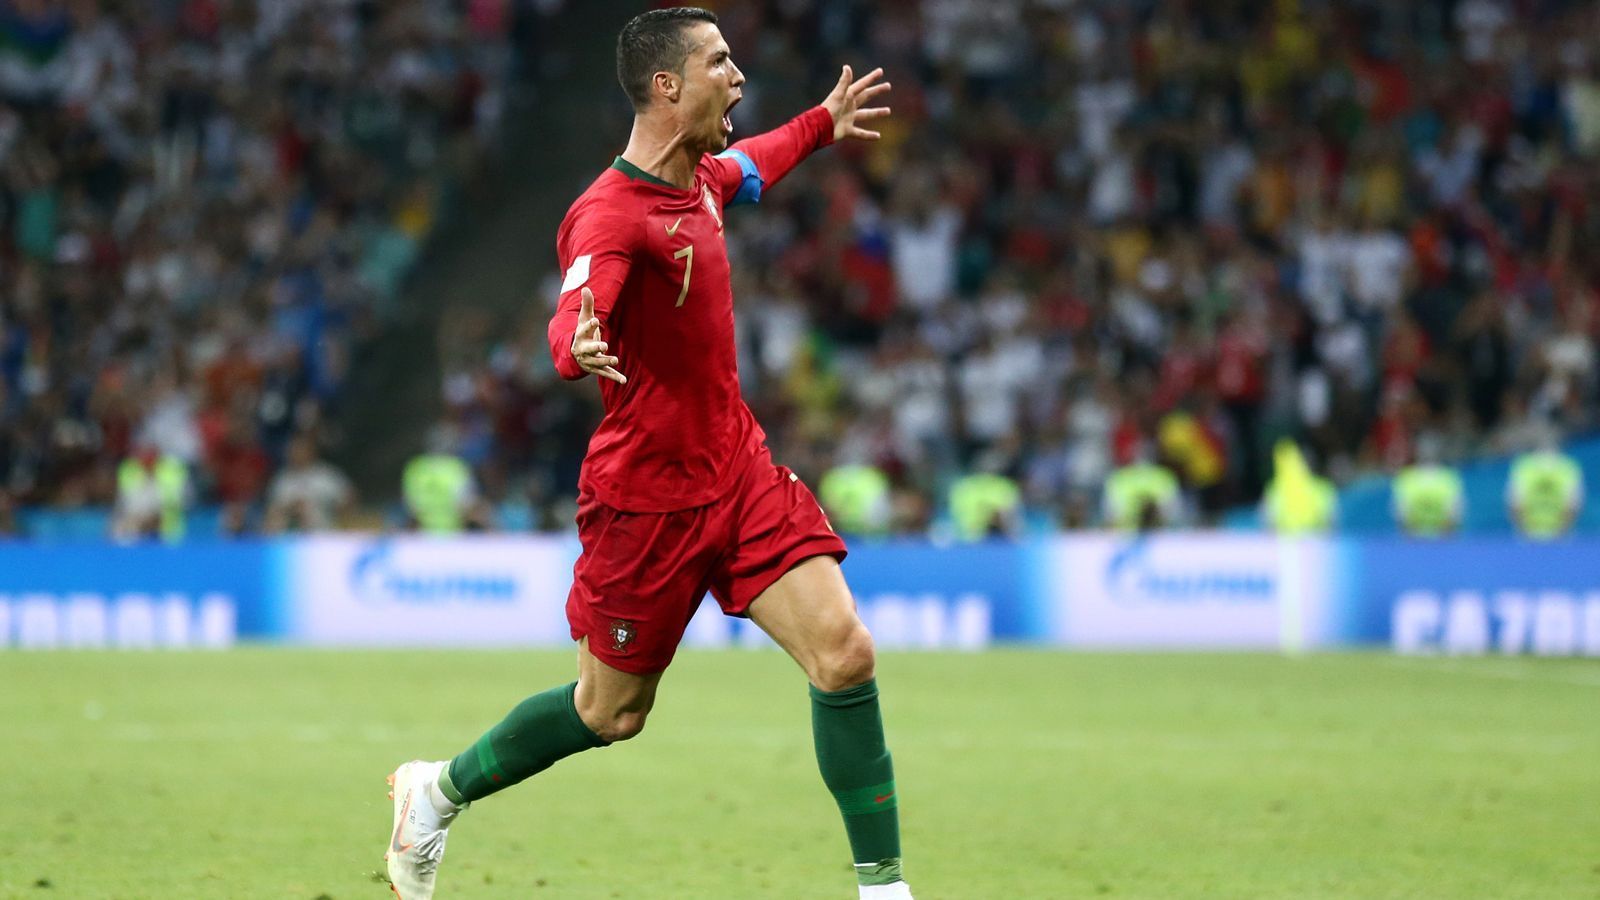 
                <strong>Ältester Schütze eines Dreierpacks</strong><br>
                Cristiano Ronaldo hat am zweiten Tag der WM-Endrunde 2018 seinen ersten Rekord aufgestellt! Der Superstar von Real Madrid erzielte beim 3:3-Unentschieden Portugals gegen Spanien einen Dreierpack. Mit 33 Jahren und 130 Tagen ist der amtierende Weltfußballer damit der älteste Spieler, dem drei Treffer in einem WM-Endrunden-Spiel gelangen. (Quelle: Opta)
              